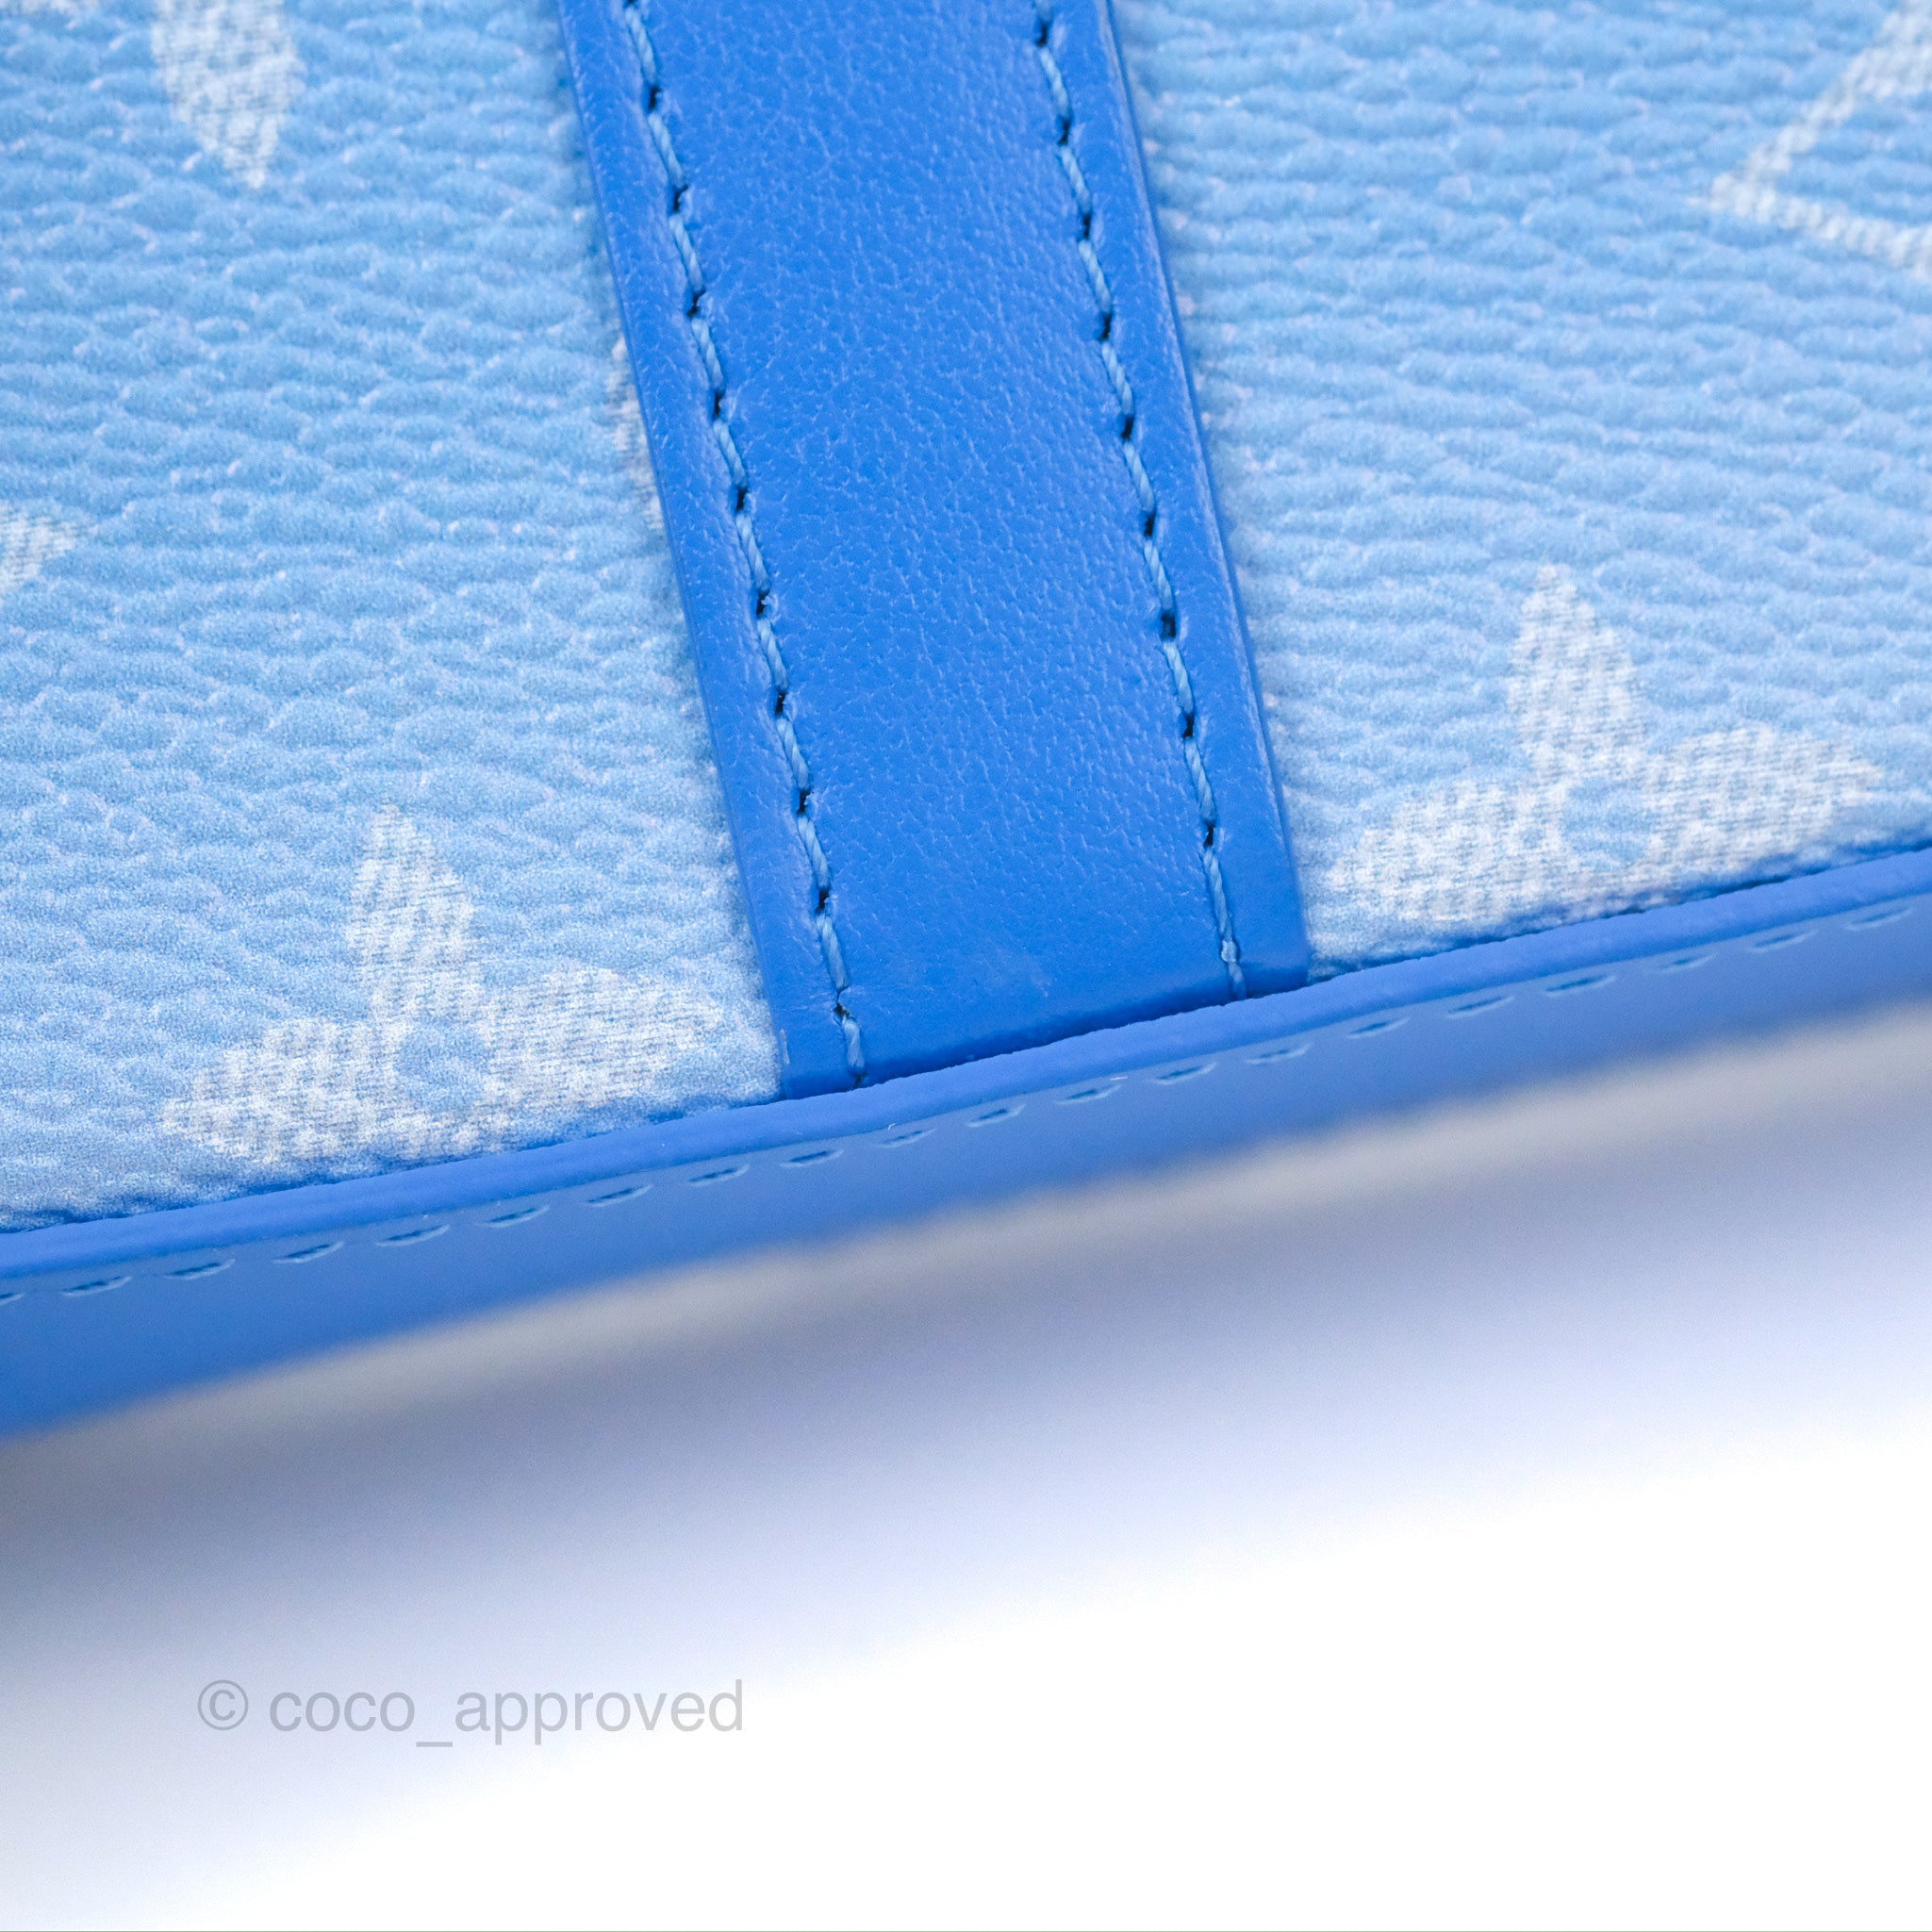 vuitton blue wallet